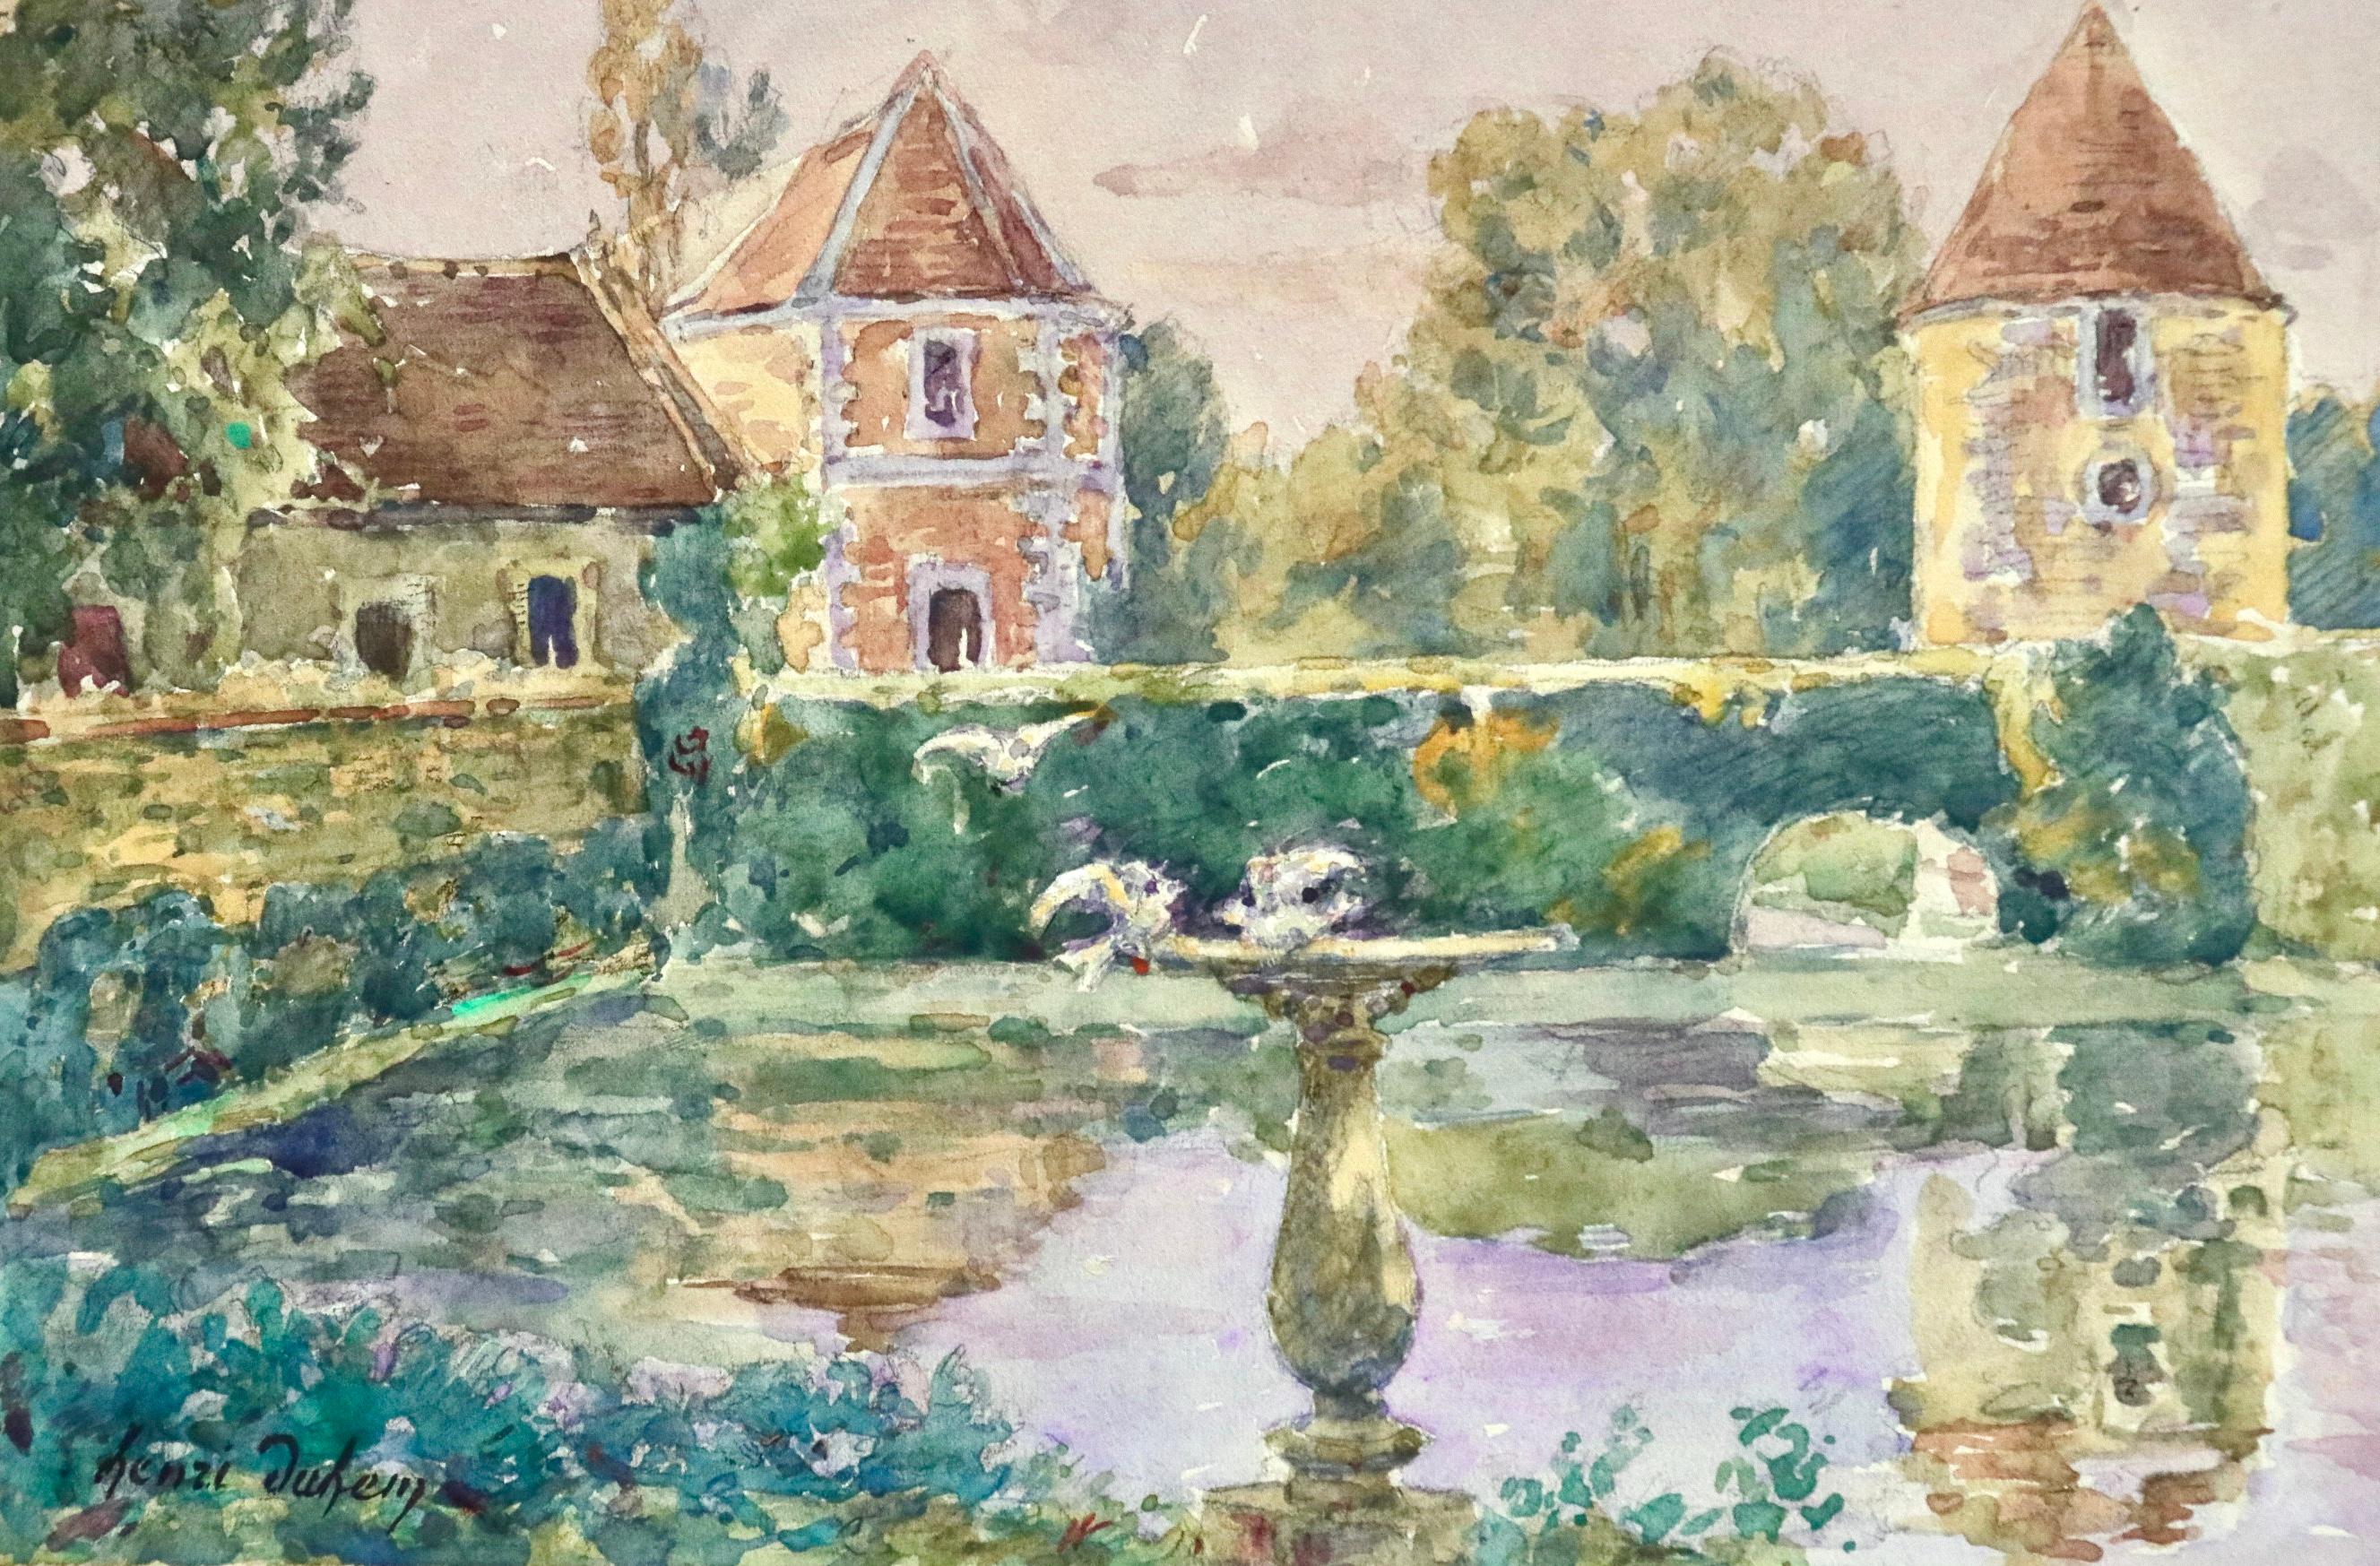 Une superbe aquarelle sur papier réalisée vers 1910 par le peintre impressionniste français Henri Duhem. L'aquarelle représente une pièce d'eau dans le jardin de l'oncle de l'artiste, Dincq, sur la place Saint-Pierre à Douai. La pièce est